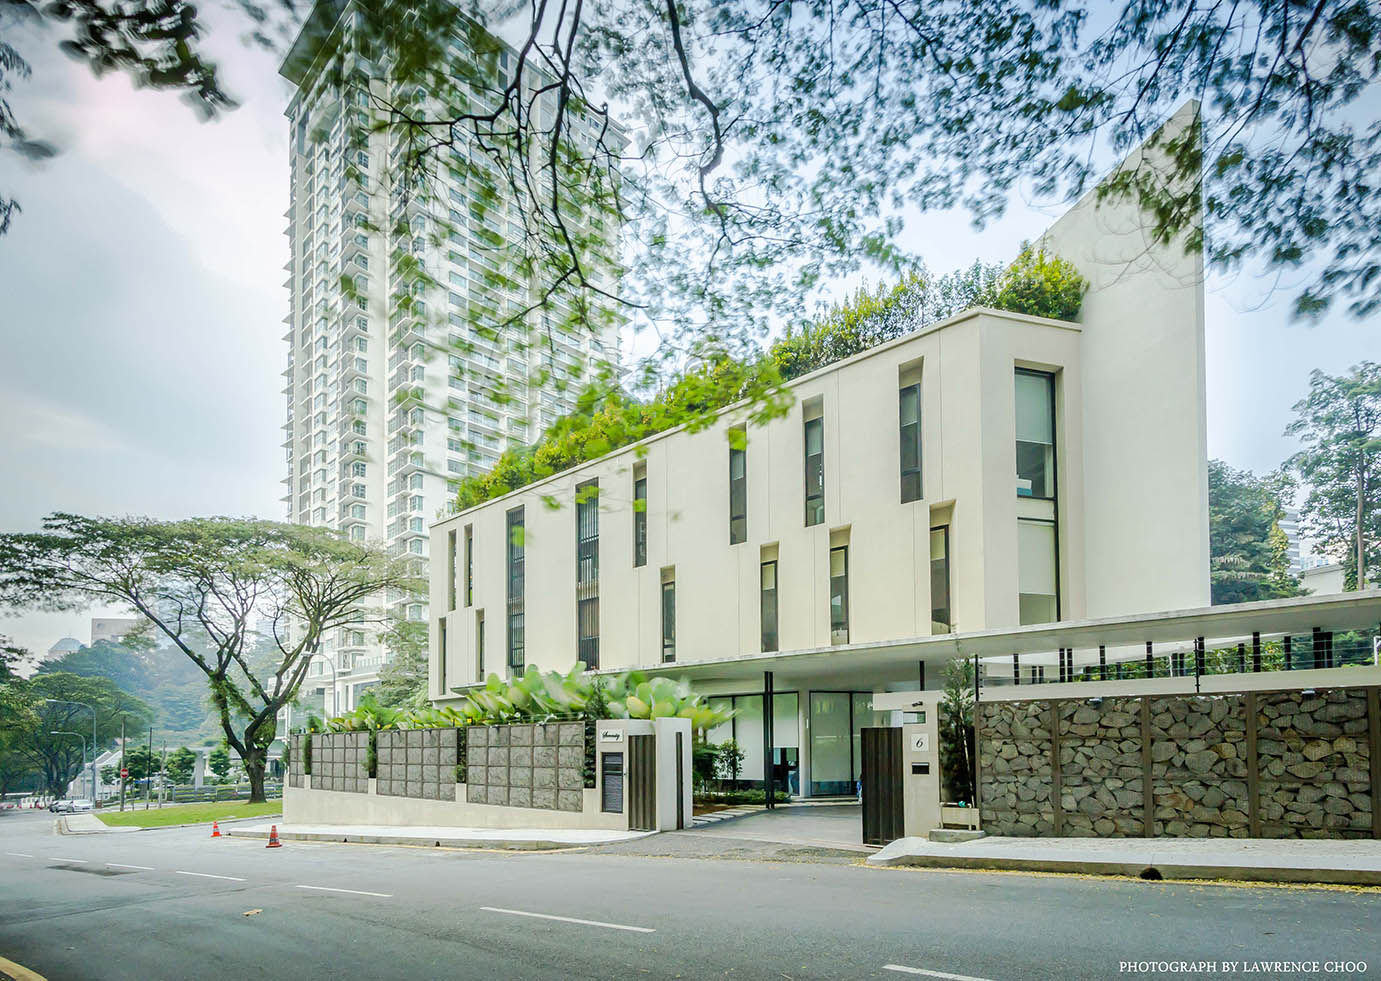 Raja Chulan Bungalow - 6 Bedroom Modern House, MJ Kanny Architect MJ Kanny Architect 모던스타일 주택